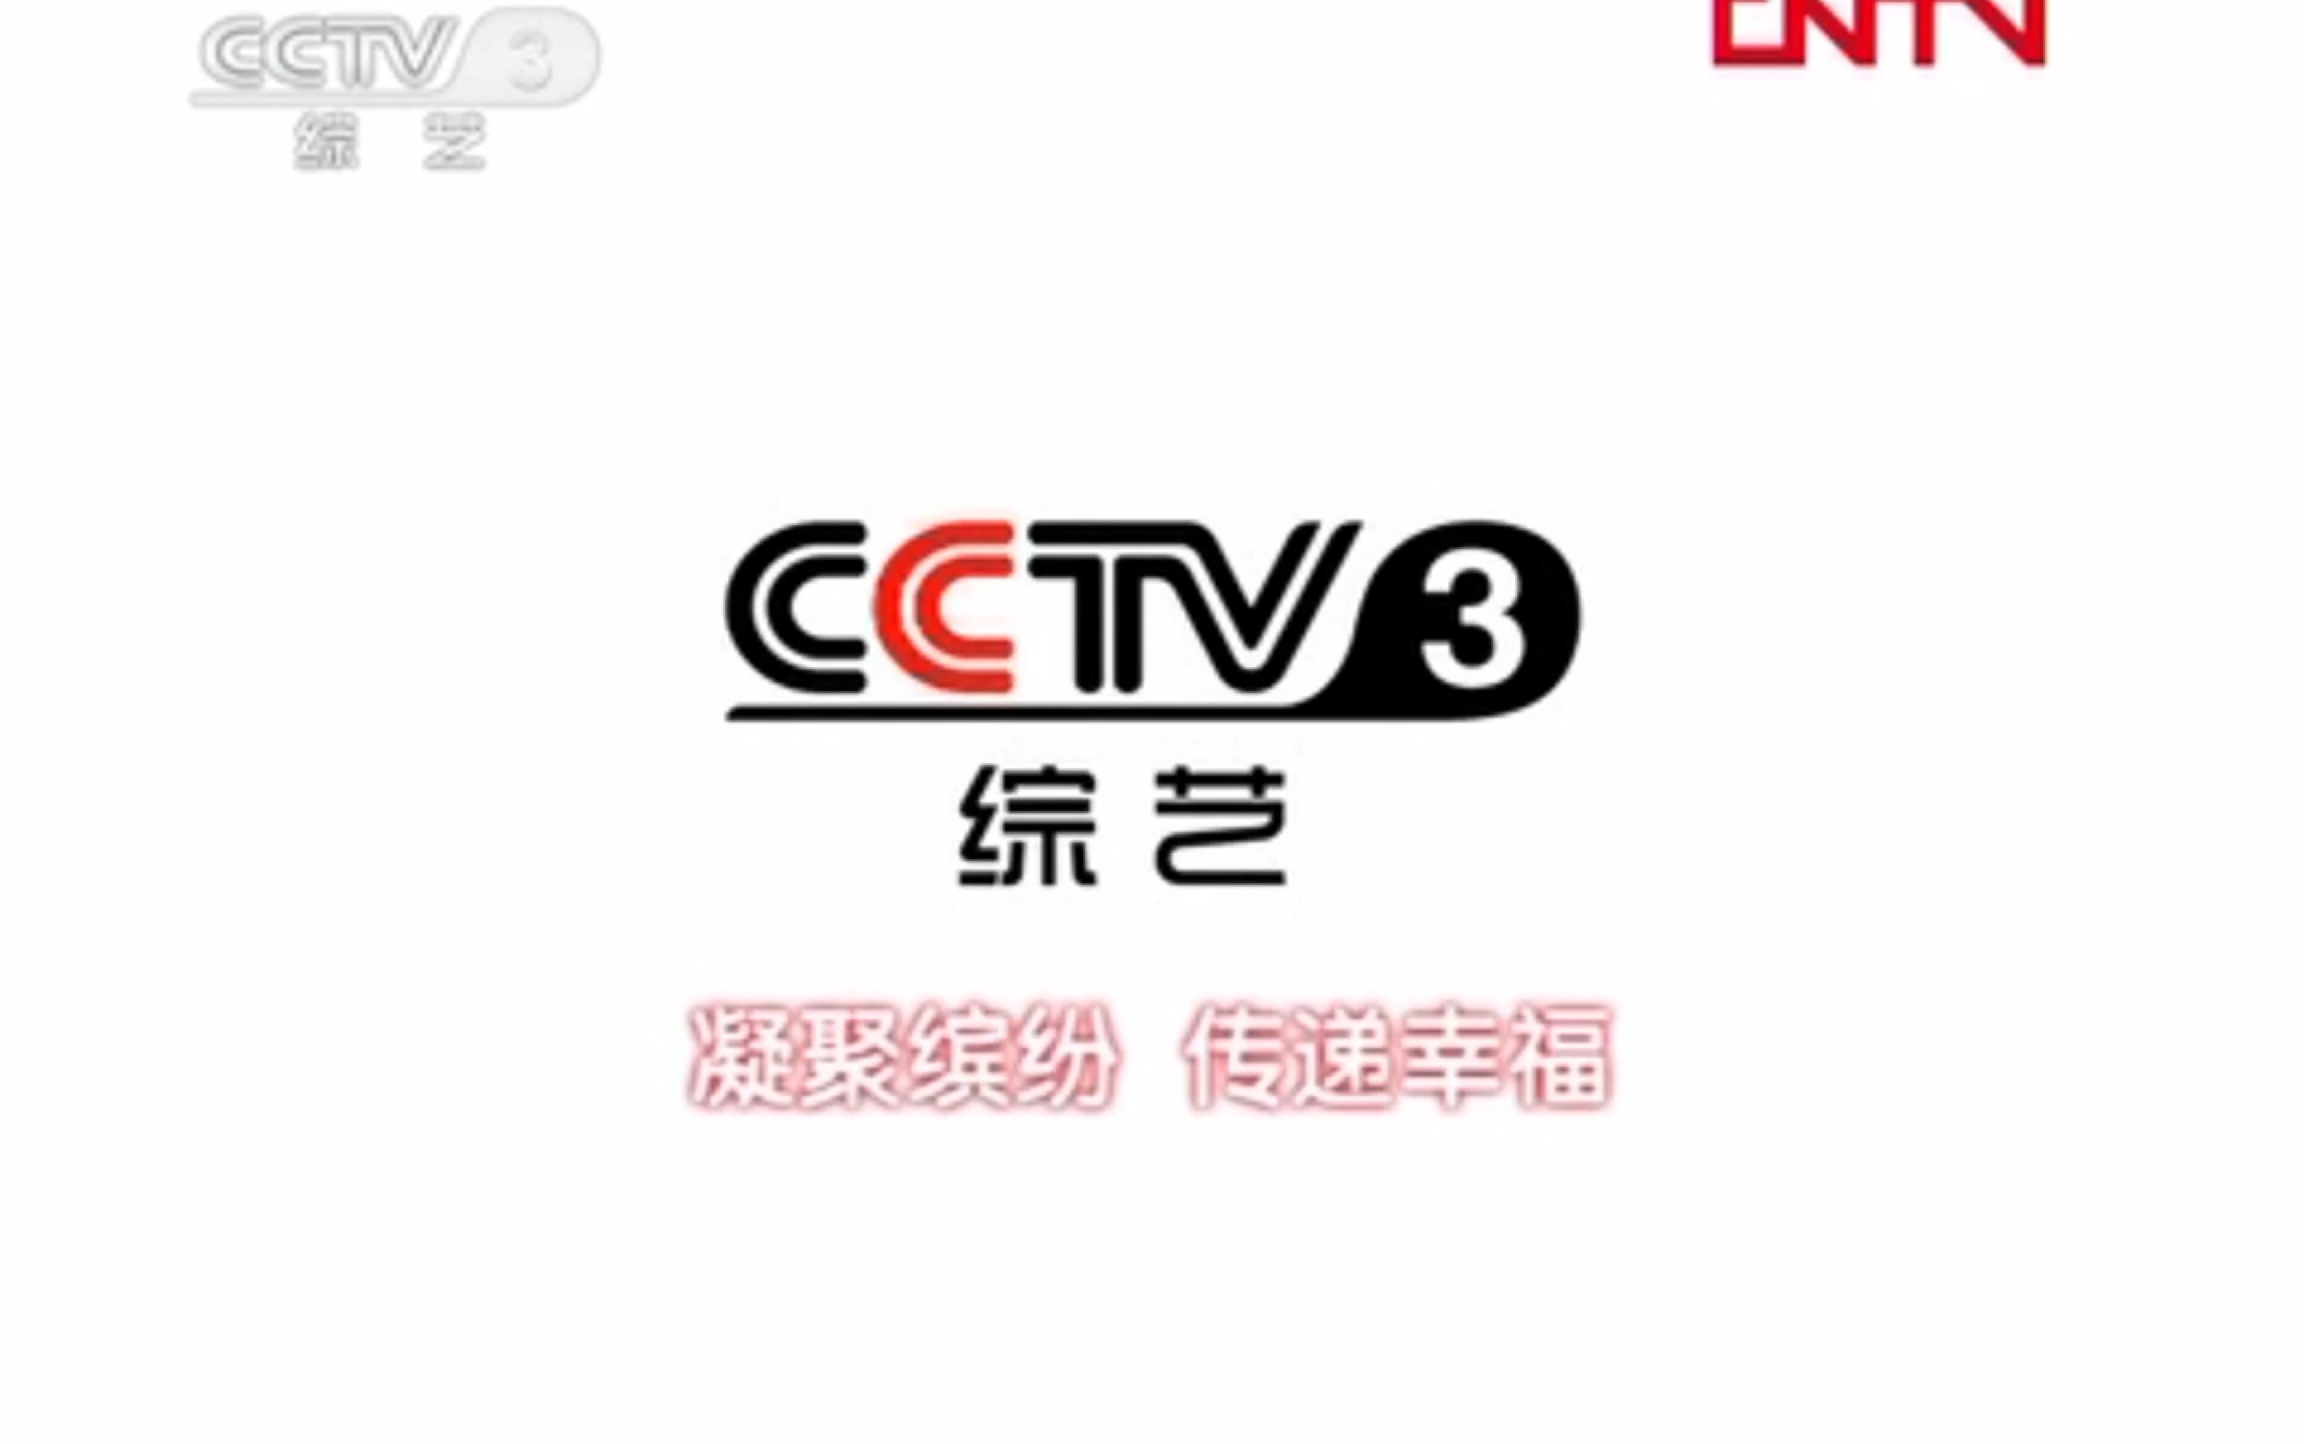 广播电视cctv3综艺频道艺术人生下一节更精彩节目预告id某宣传片片段